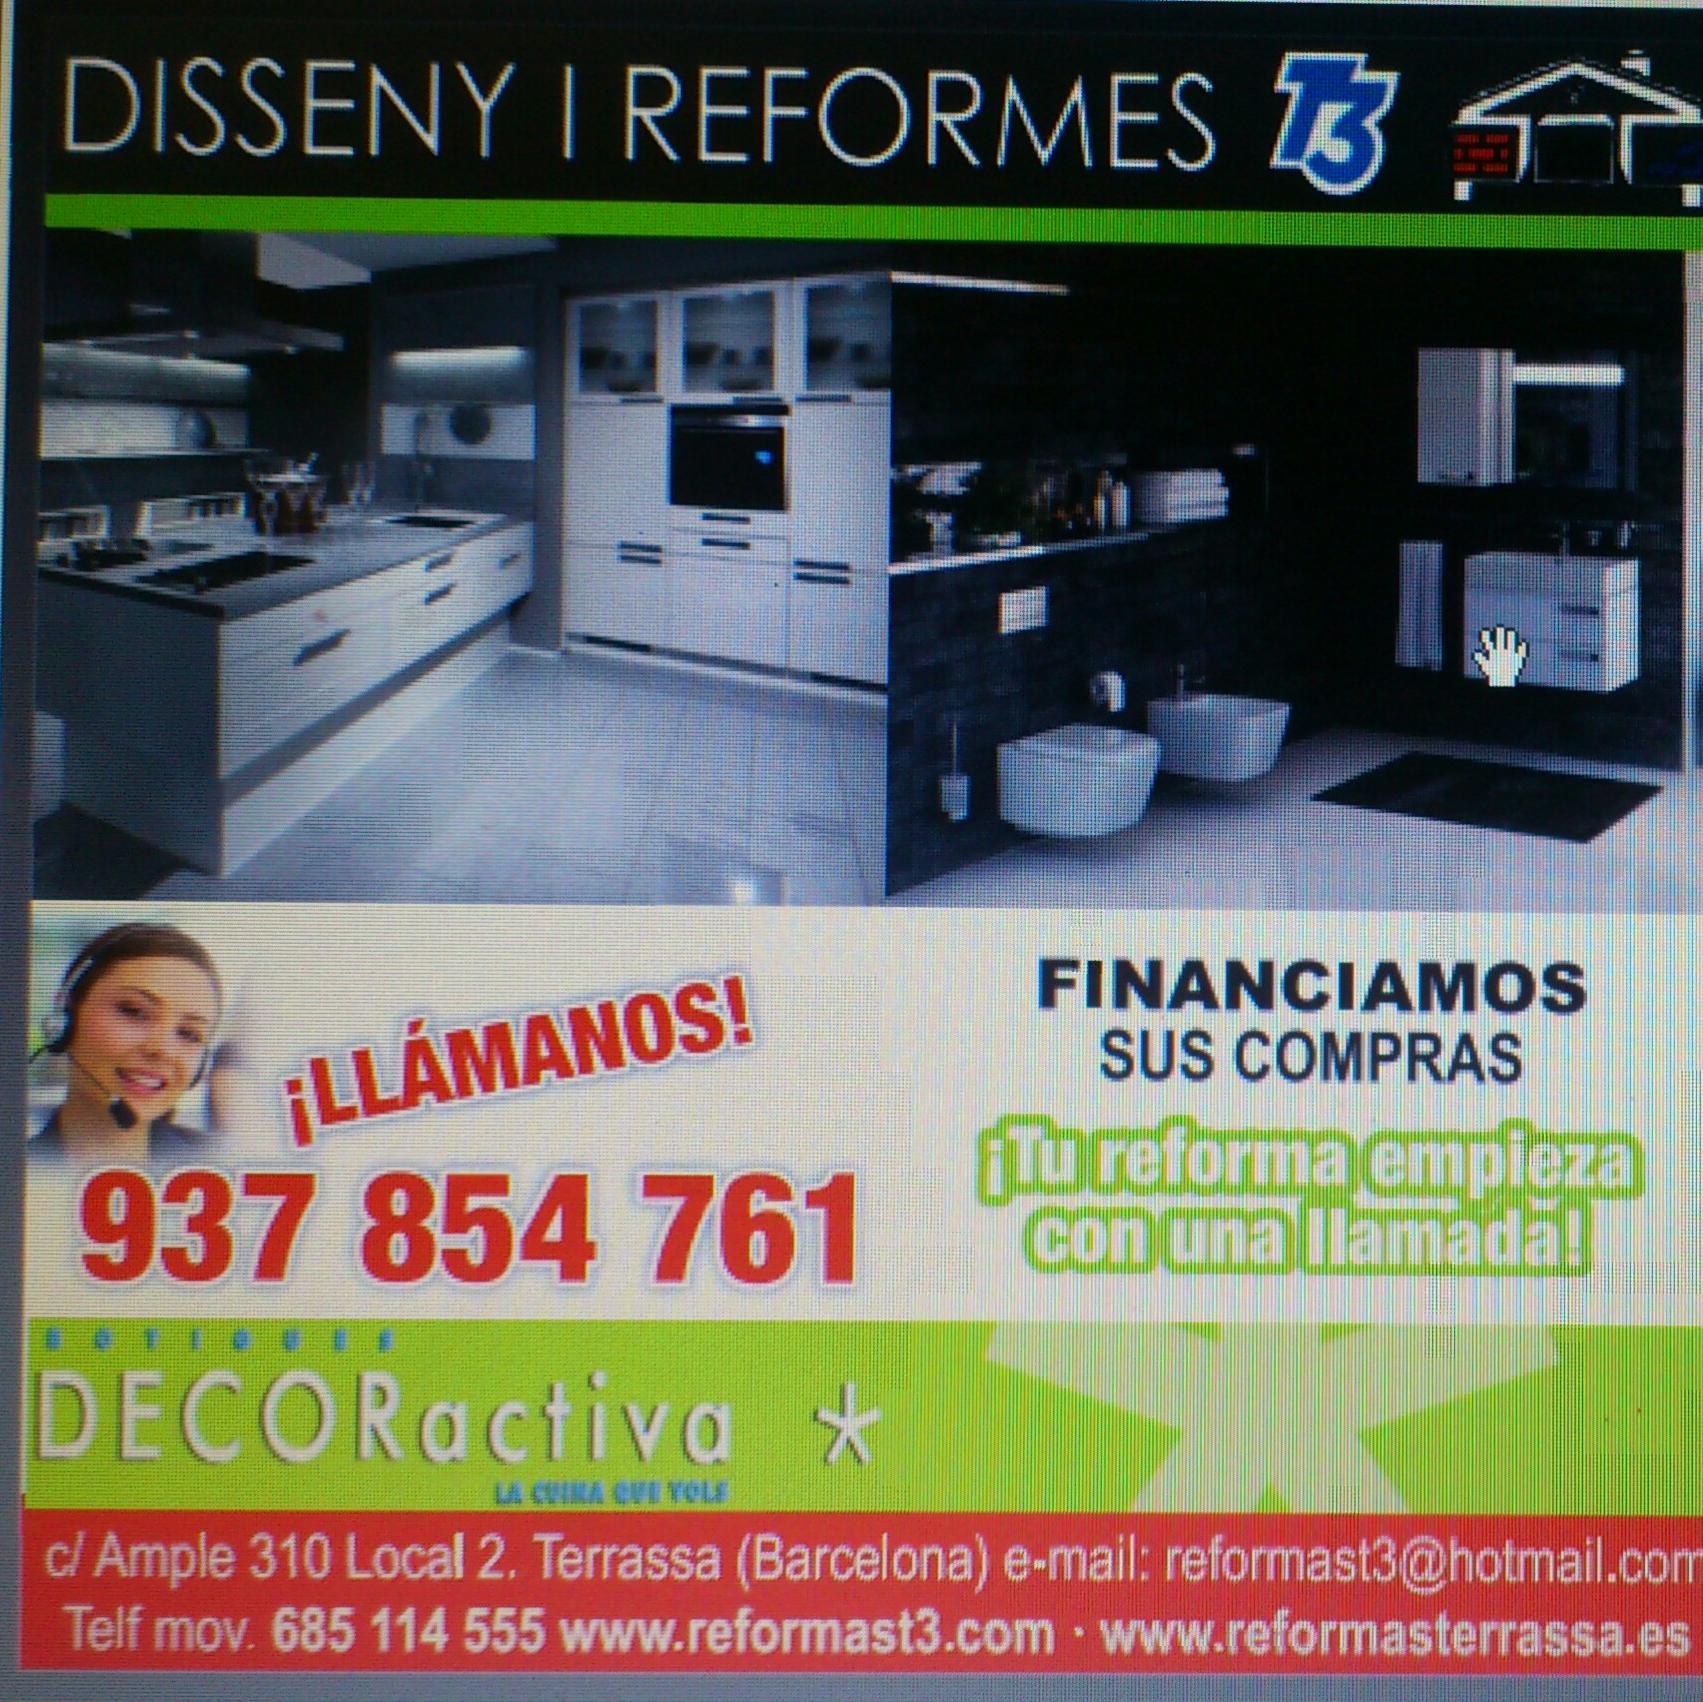 Disseny i Reformes T3 es una empresa con amplia experiencia en el sector, especializada en cocinas y reformas integrales de su hogar